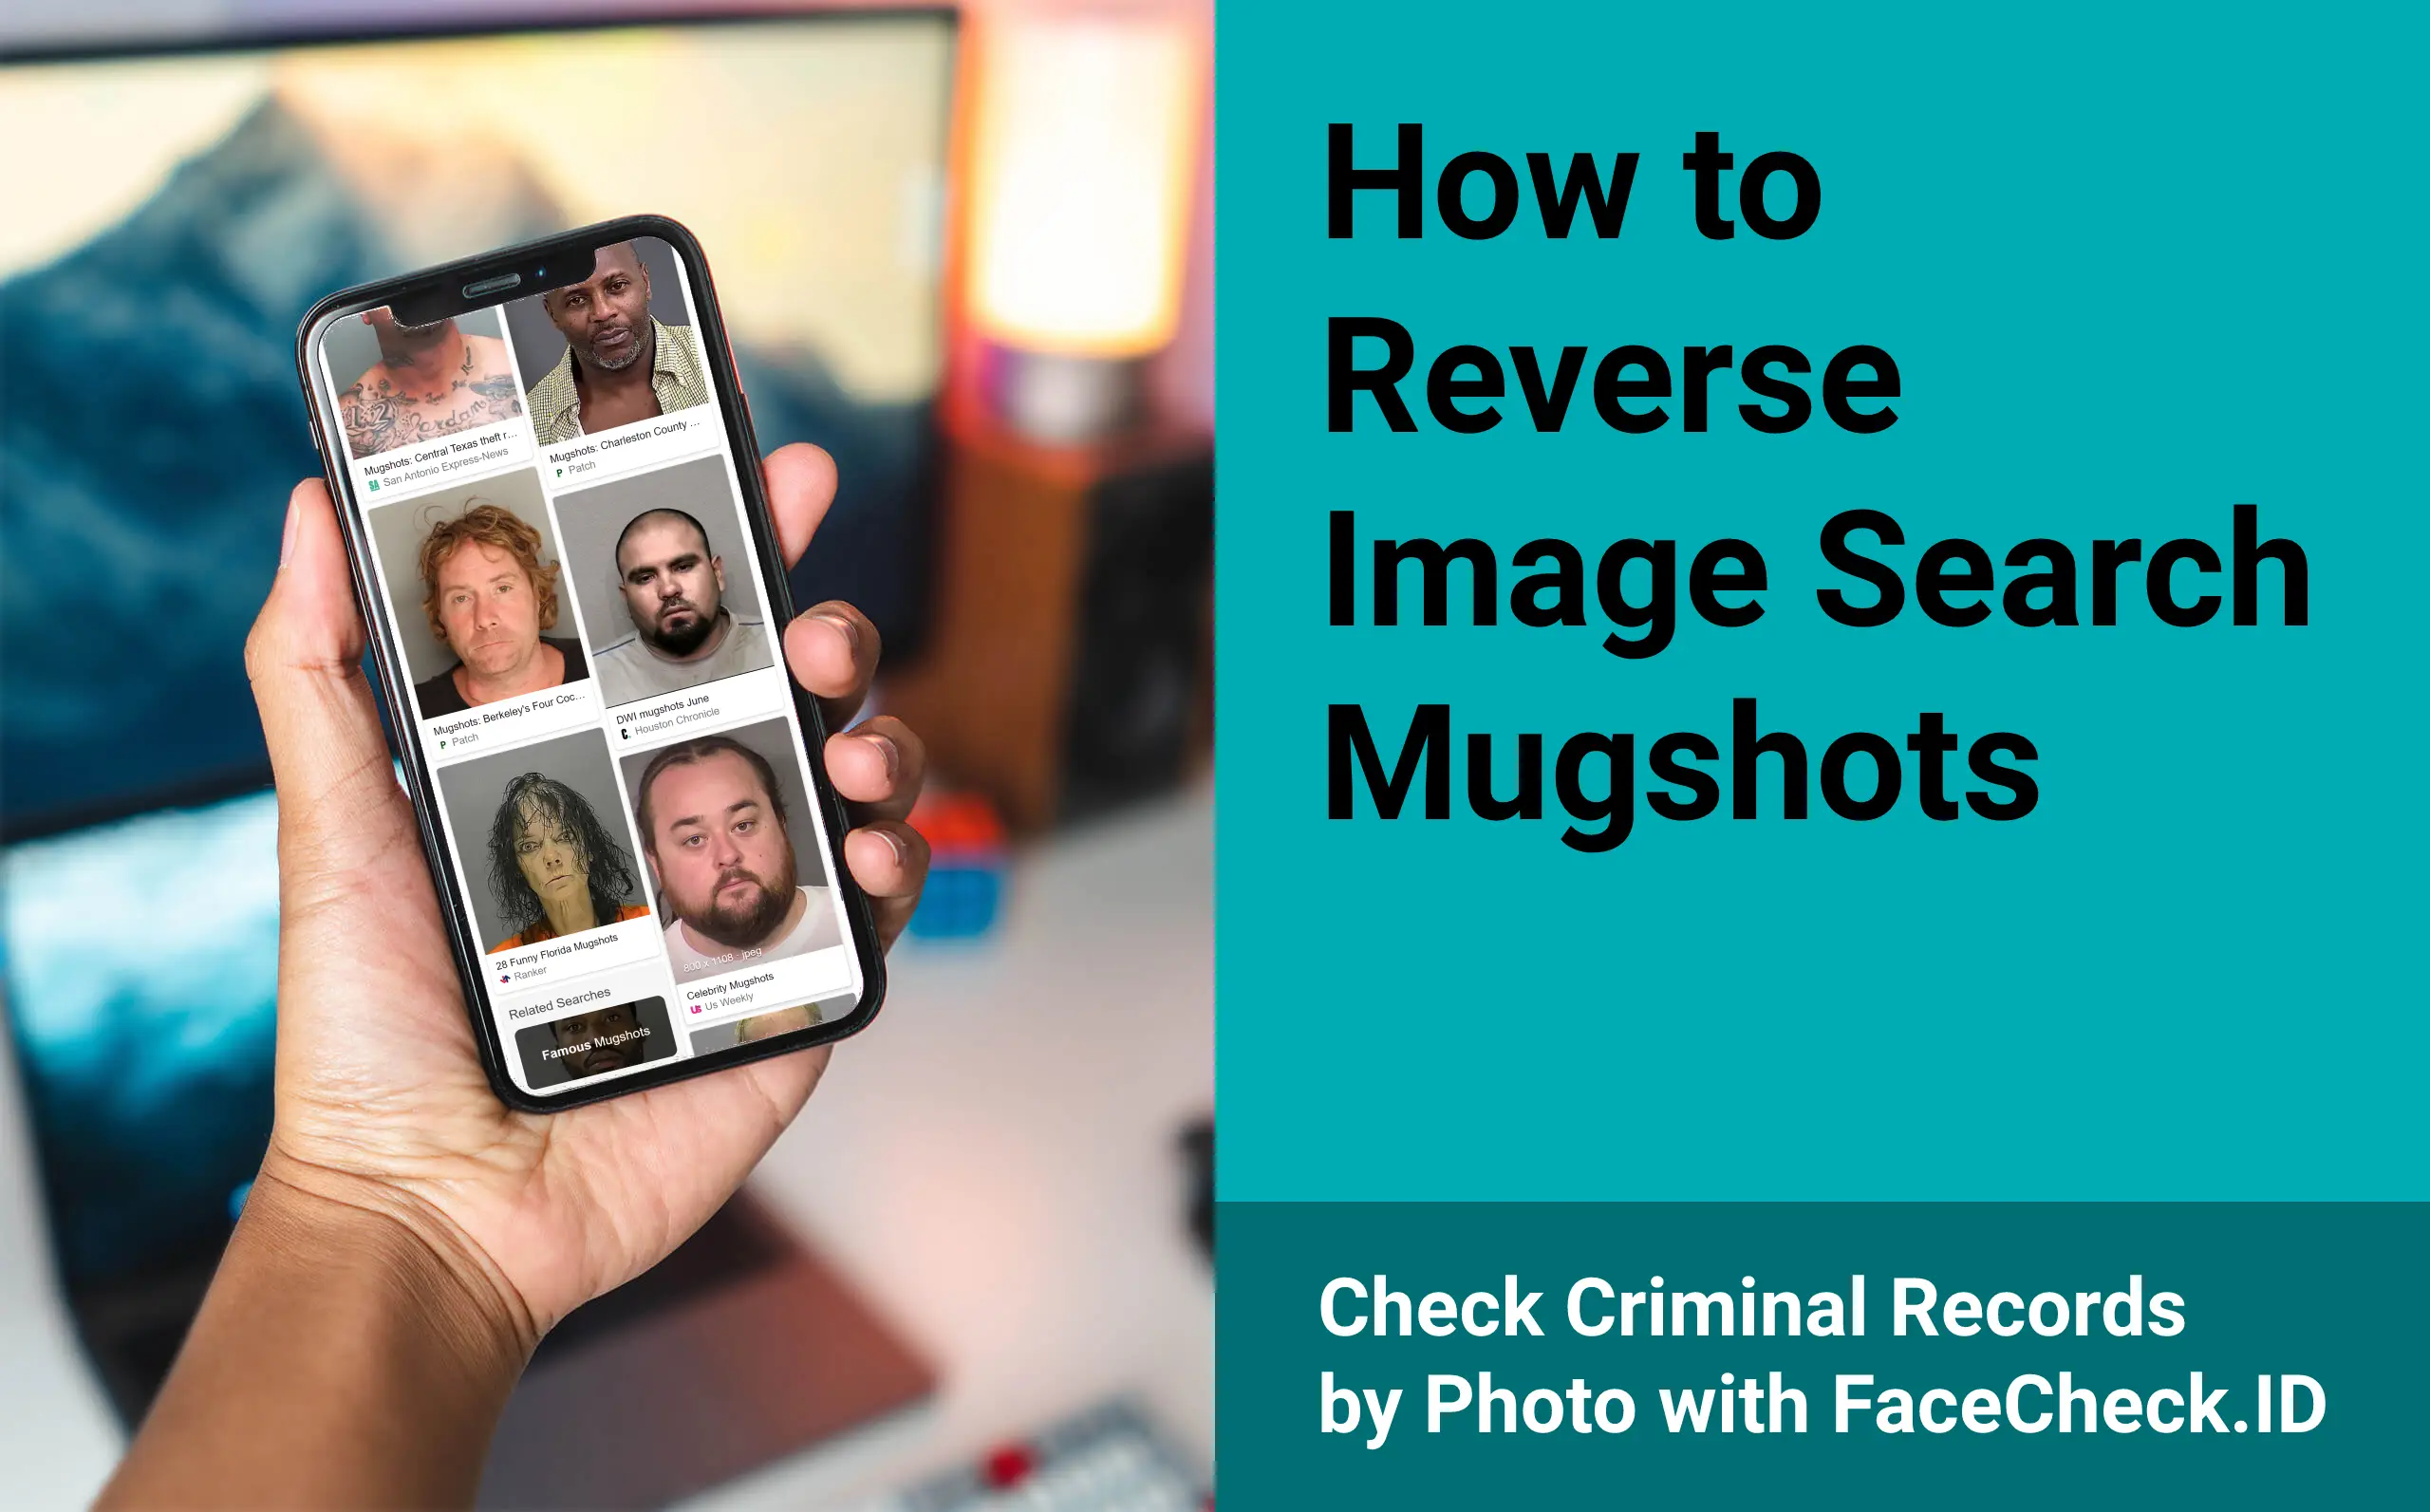 Search mugshots by image